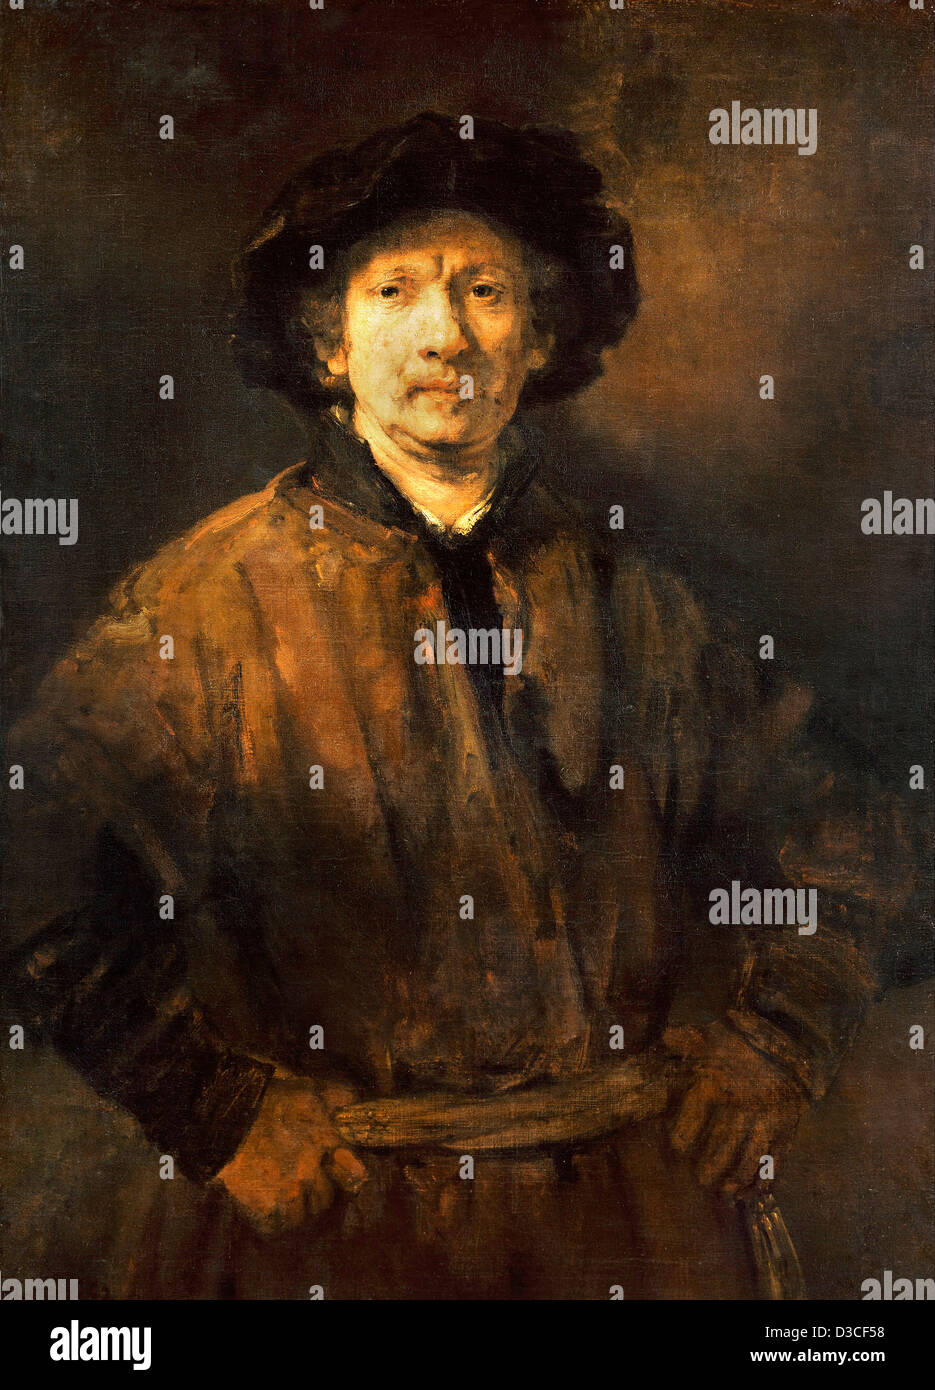 Rembrandt van Rijn, Grandi Self-portrait. 1652 olio su tela. Il barocco. Kunsthistorisches Museum di Vienna. Foto Stock